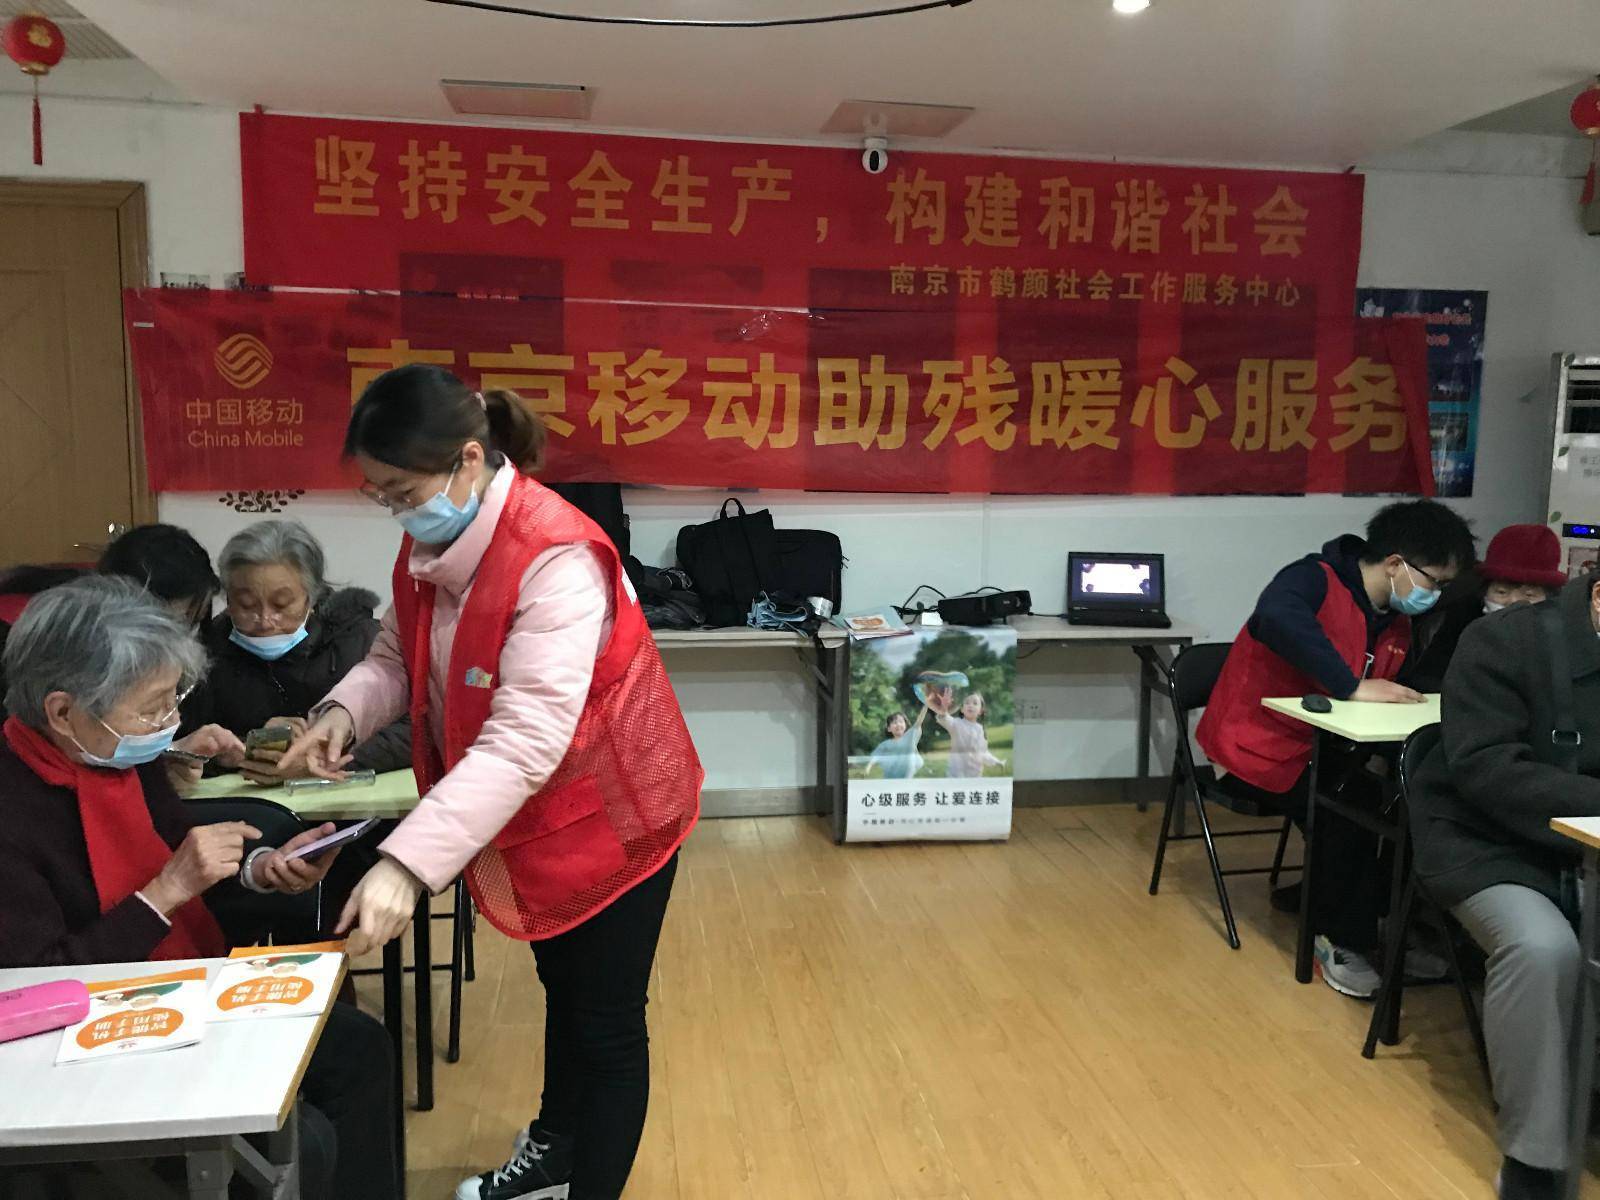 老年手机电信版华为
:南京移动老年手机课堂为老人晚年幸福生活“加码”